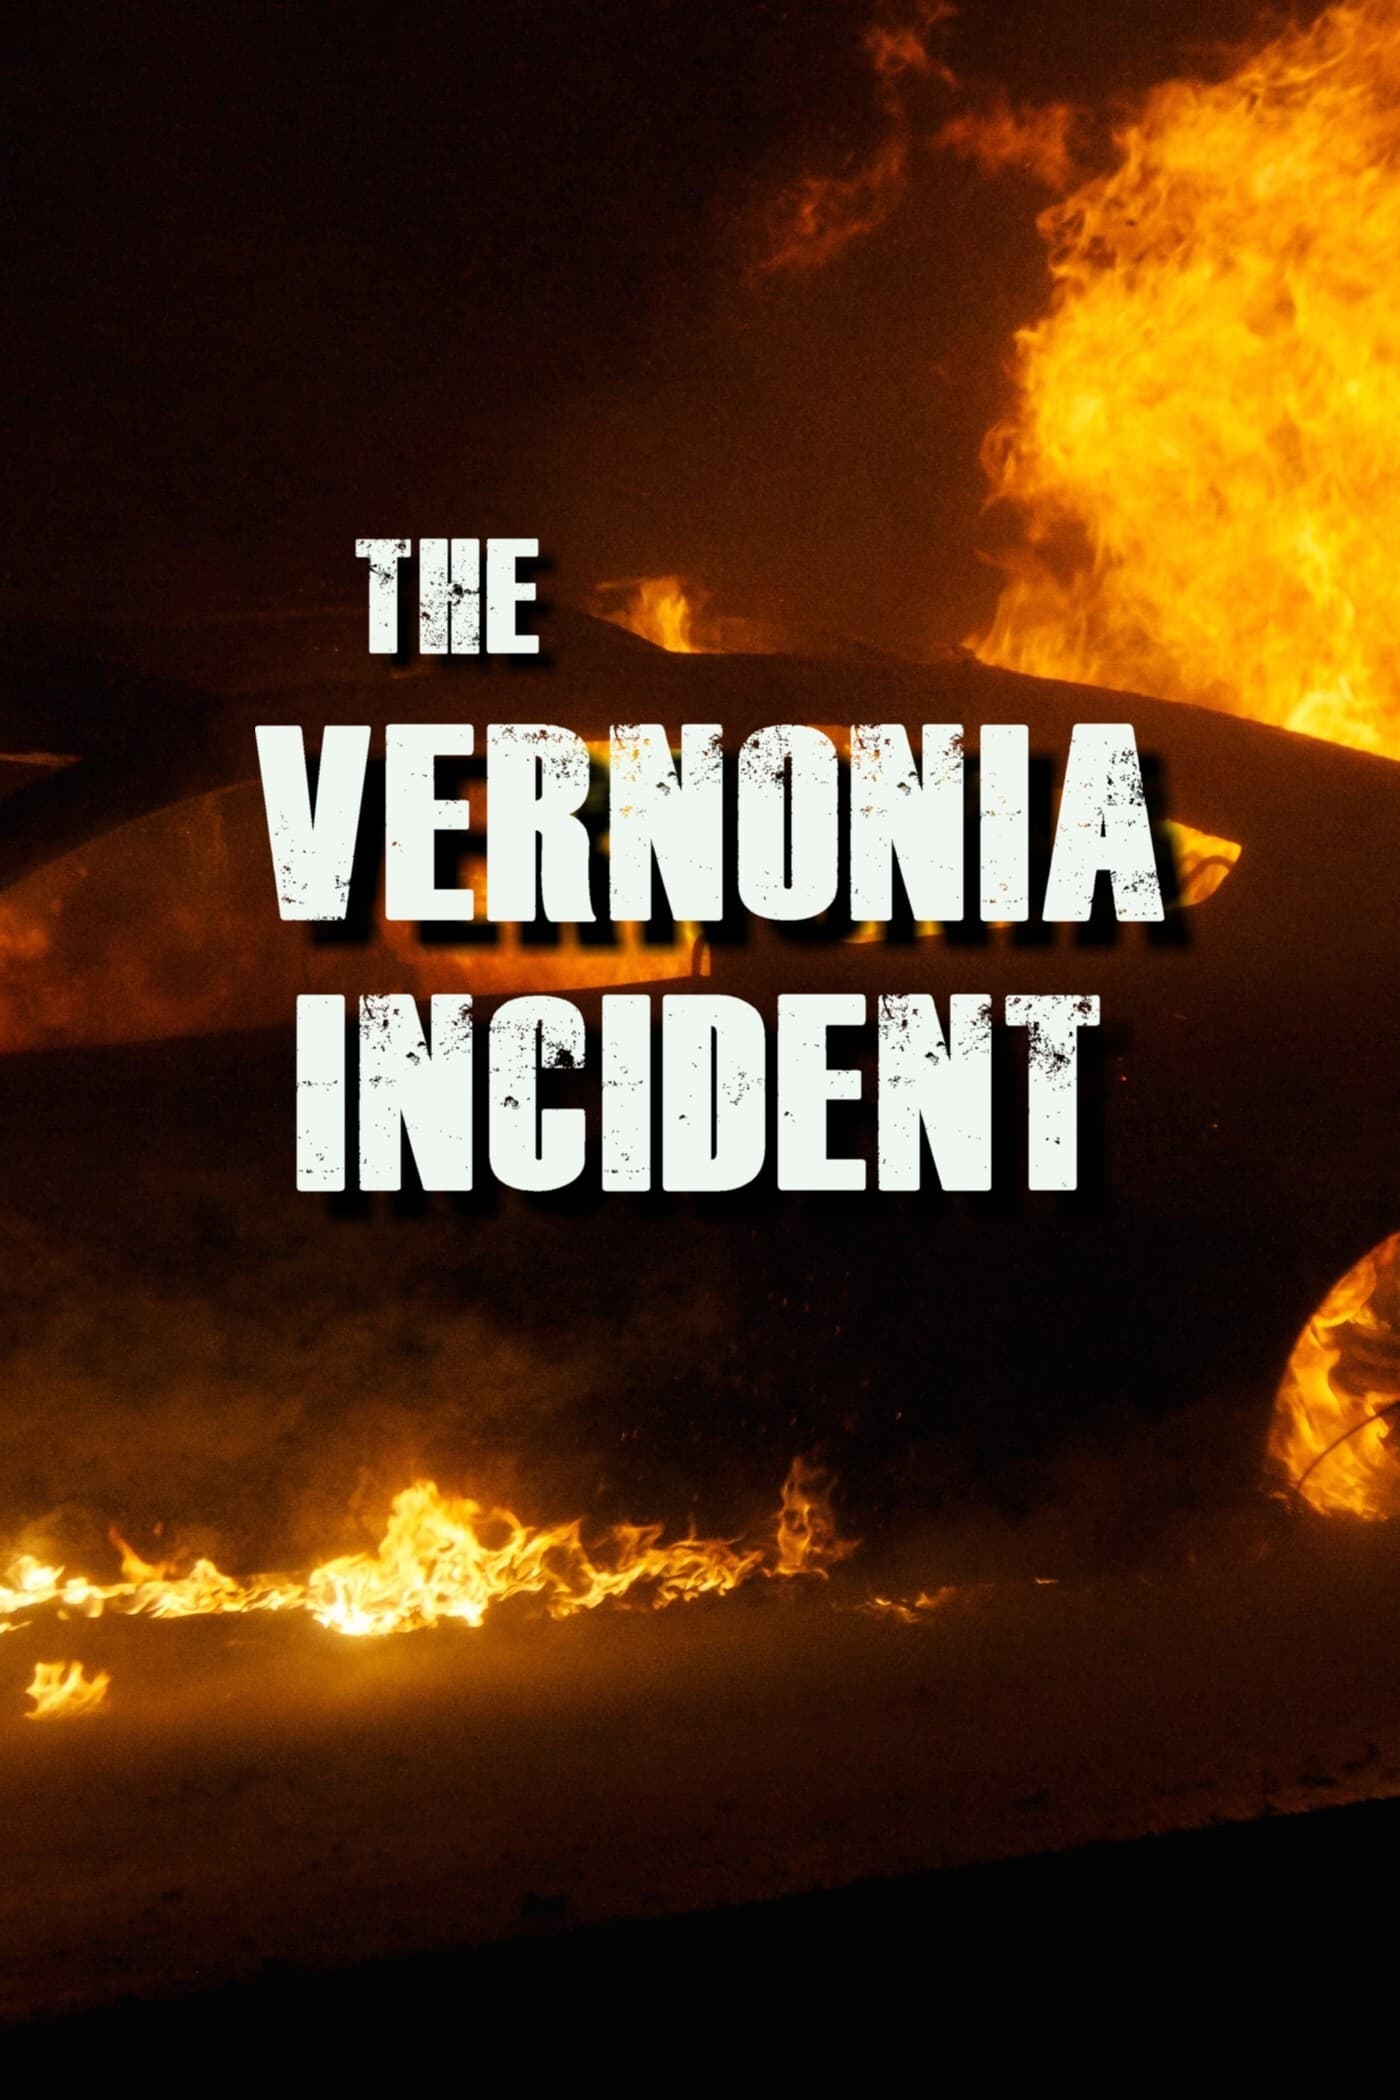 The Vernonia Incident